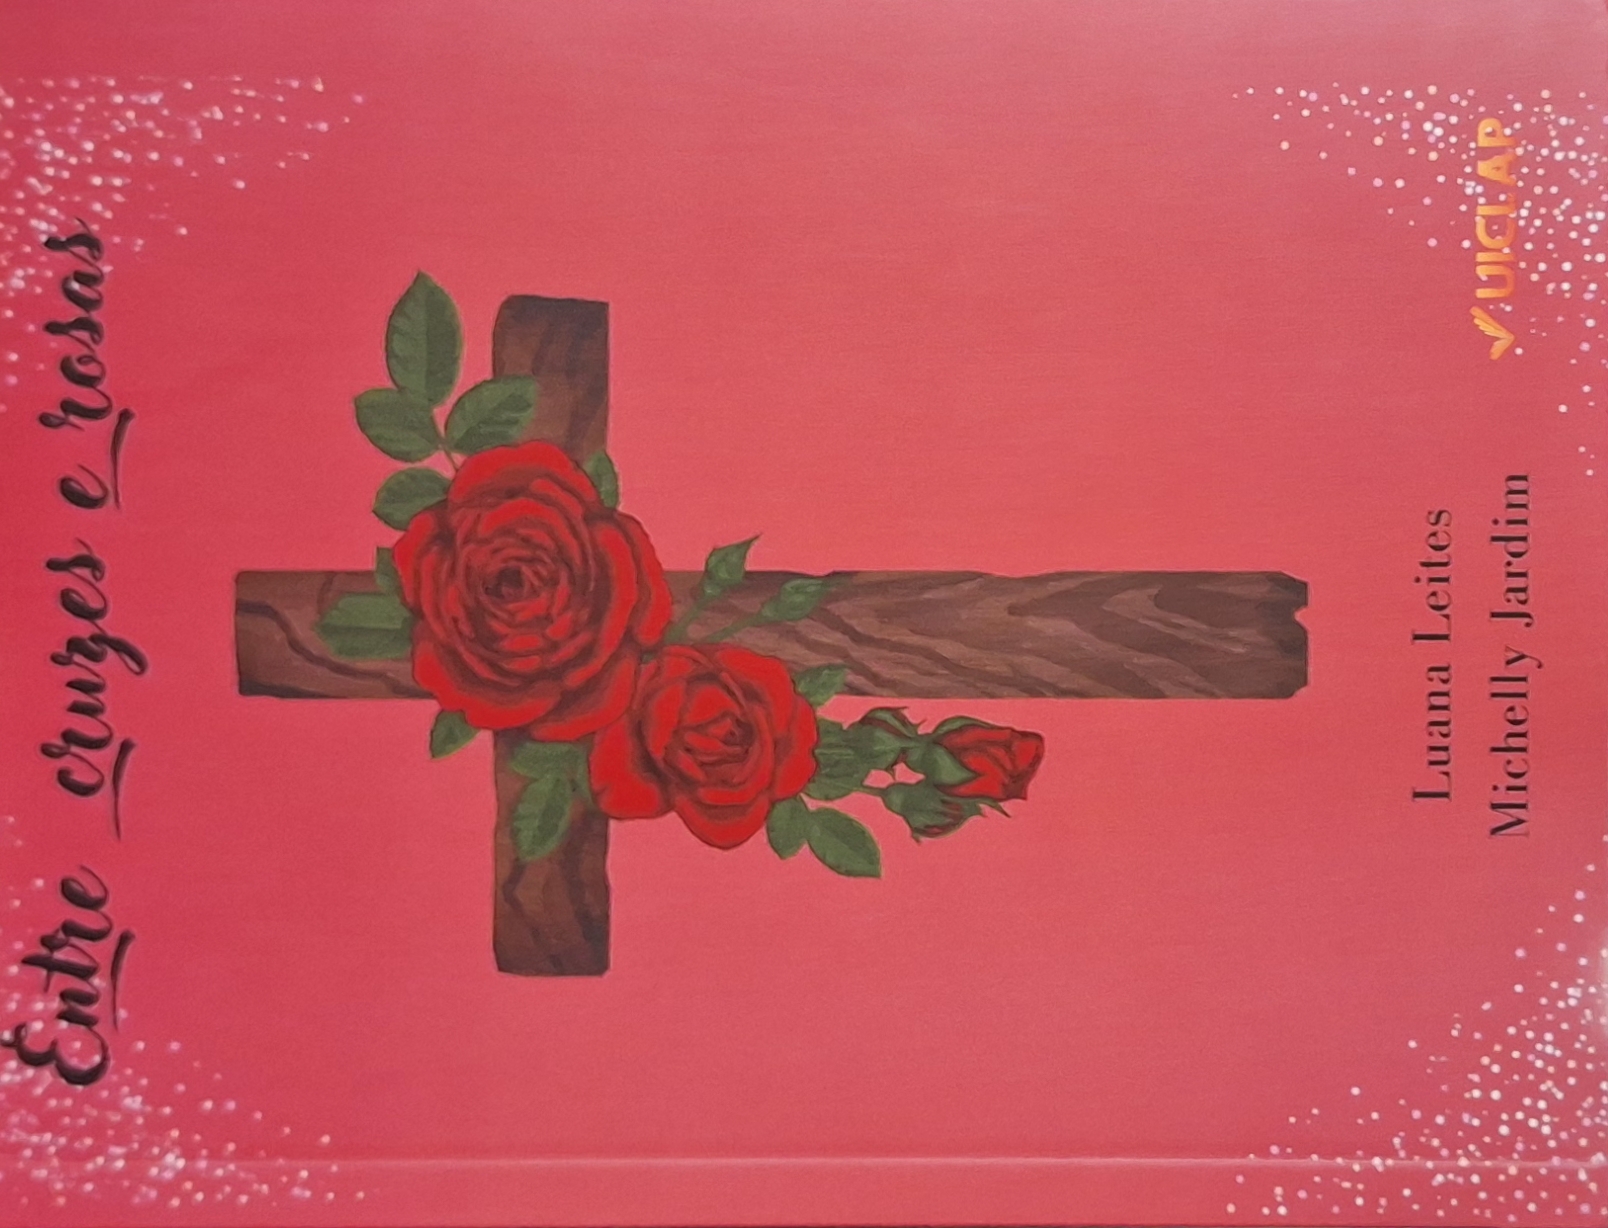 Capa do livro "Entre cruzes e rosas" de Luana Leites e Michelle Jardim, pela Editora Uiclap